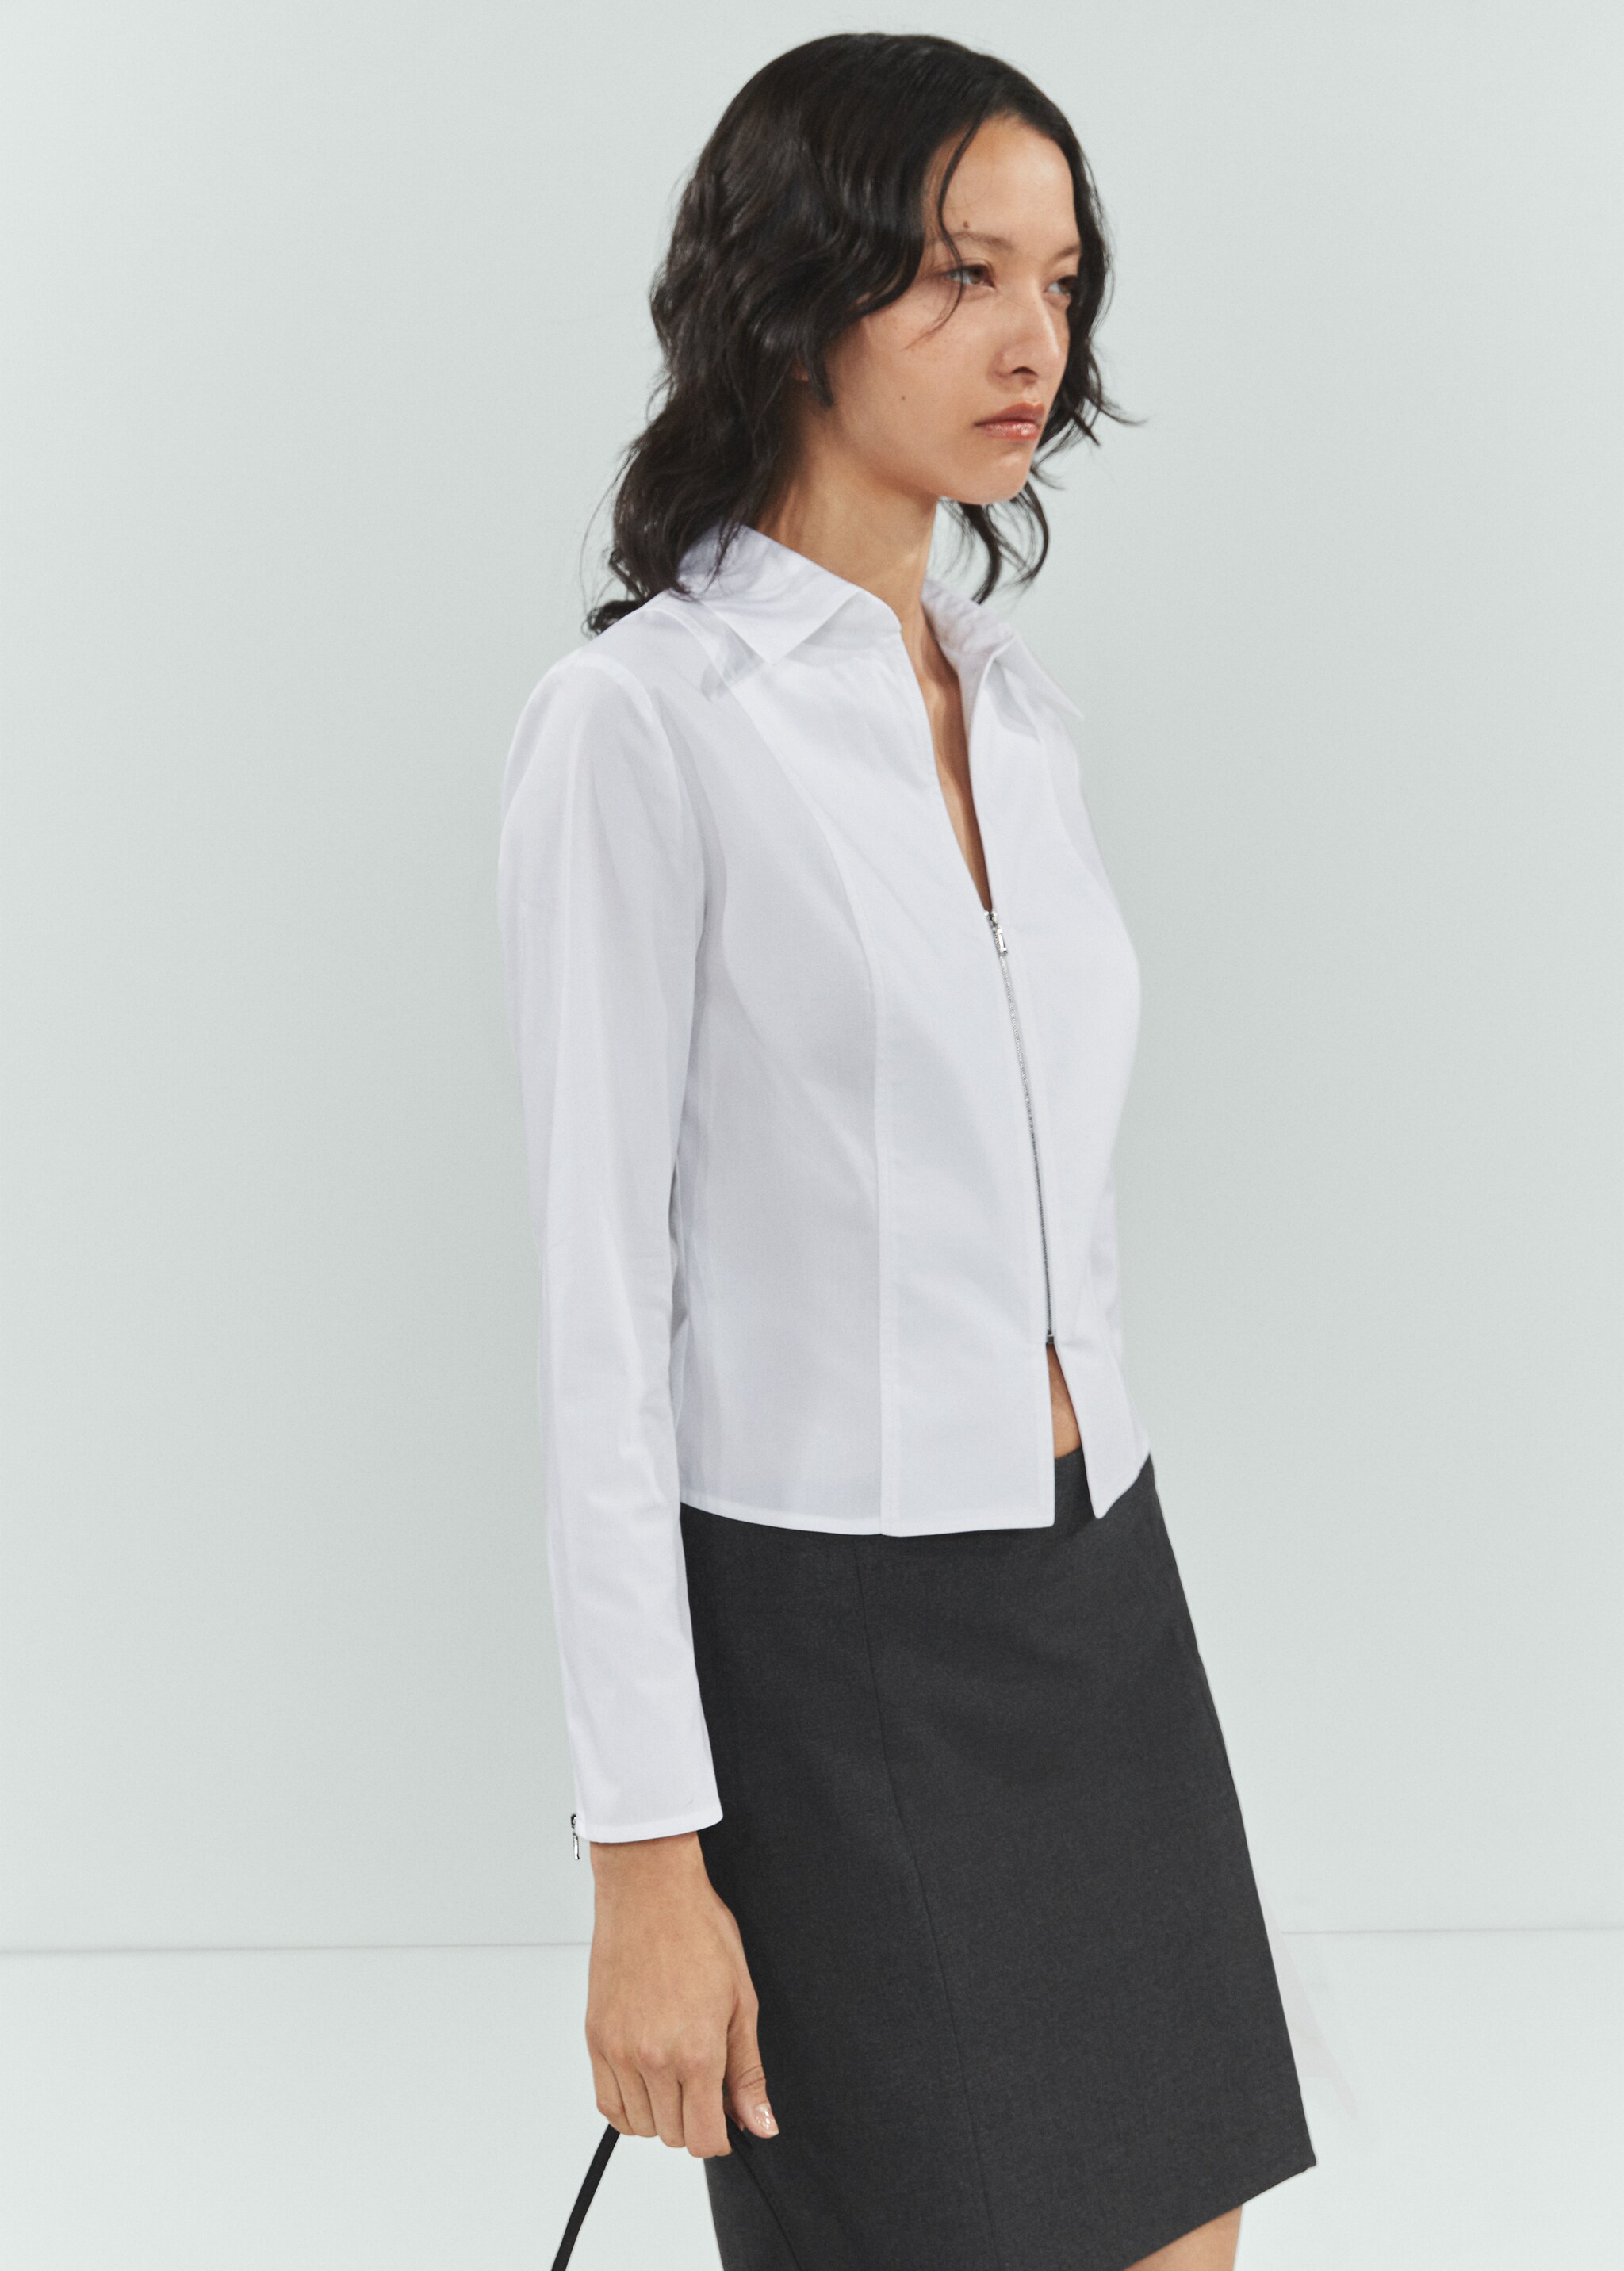 Fitted cotton zipper shirt - Medium plane